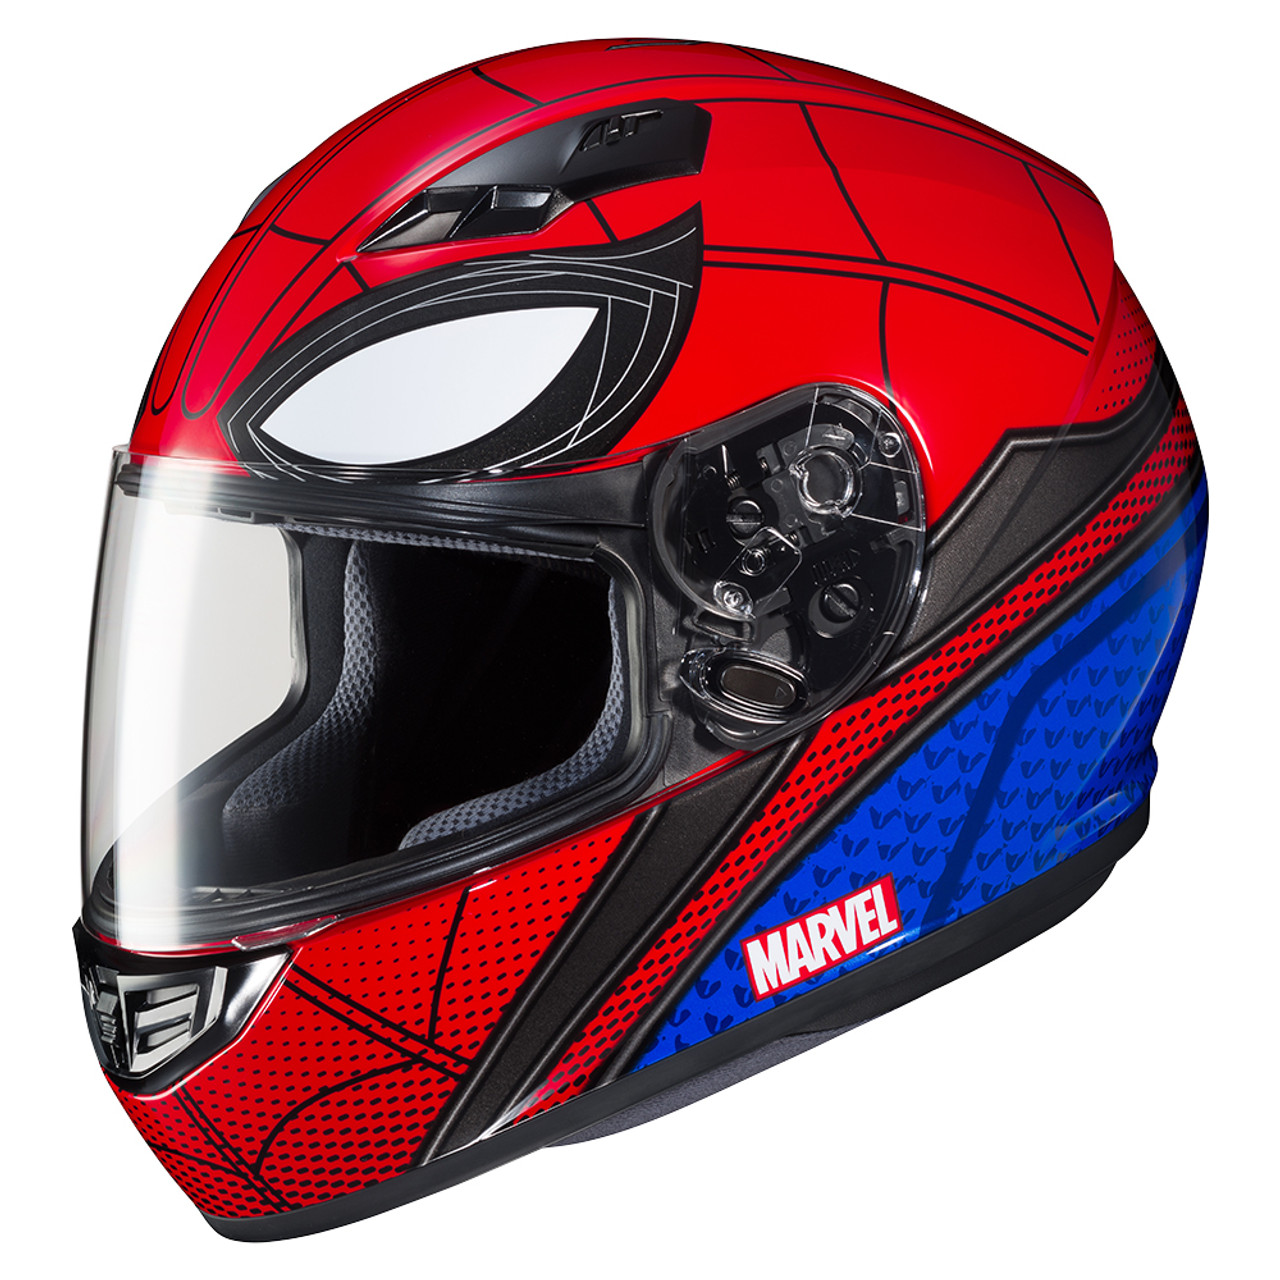 spiderman bicycle helmet